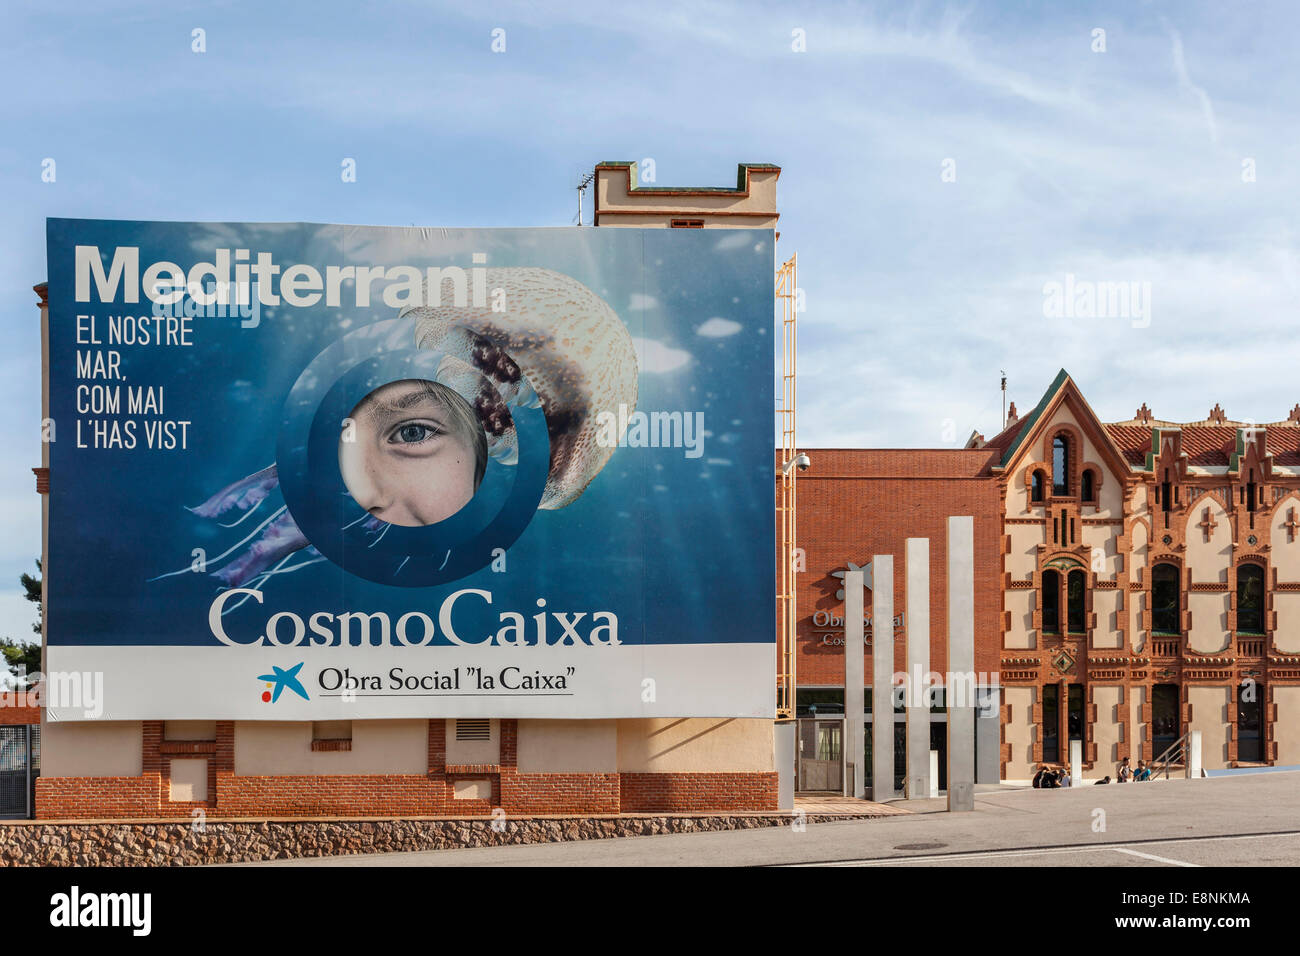 Cosmocaixa,Museu de la Ciencia, Barcelona. Stock Photo